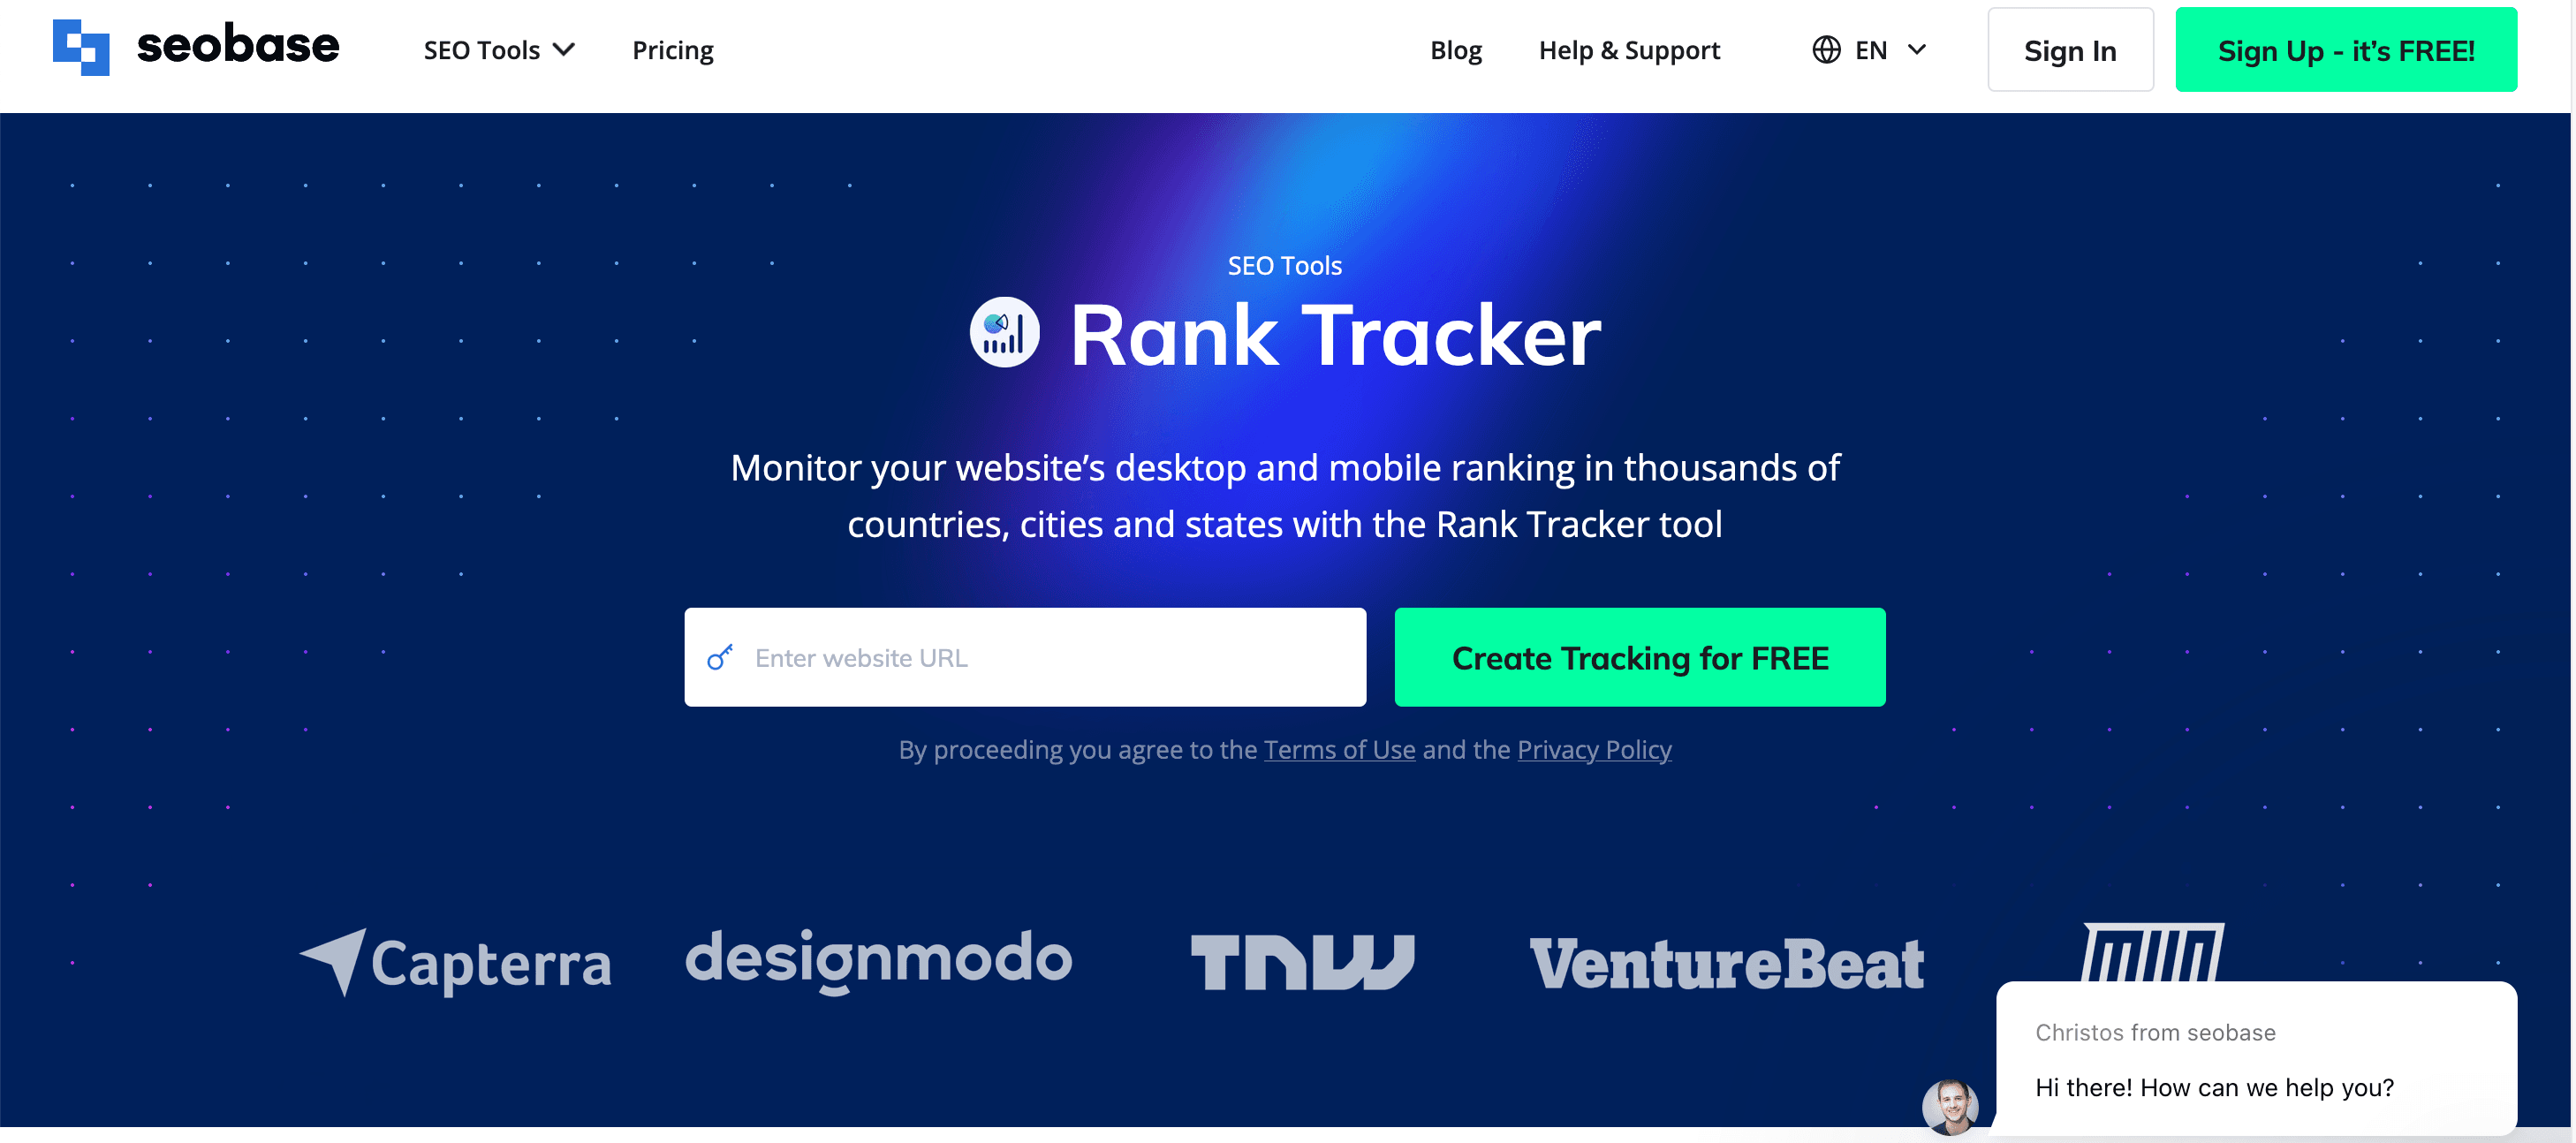 rank tracker tool